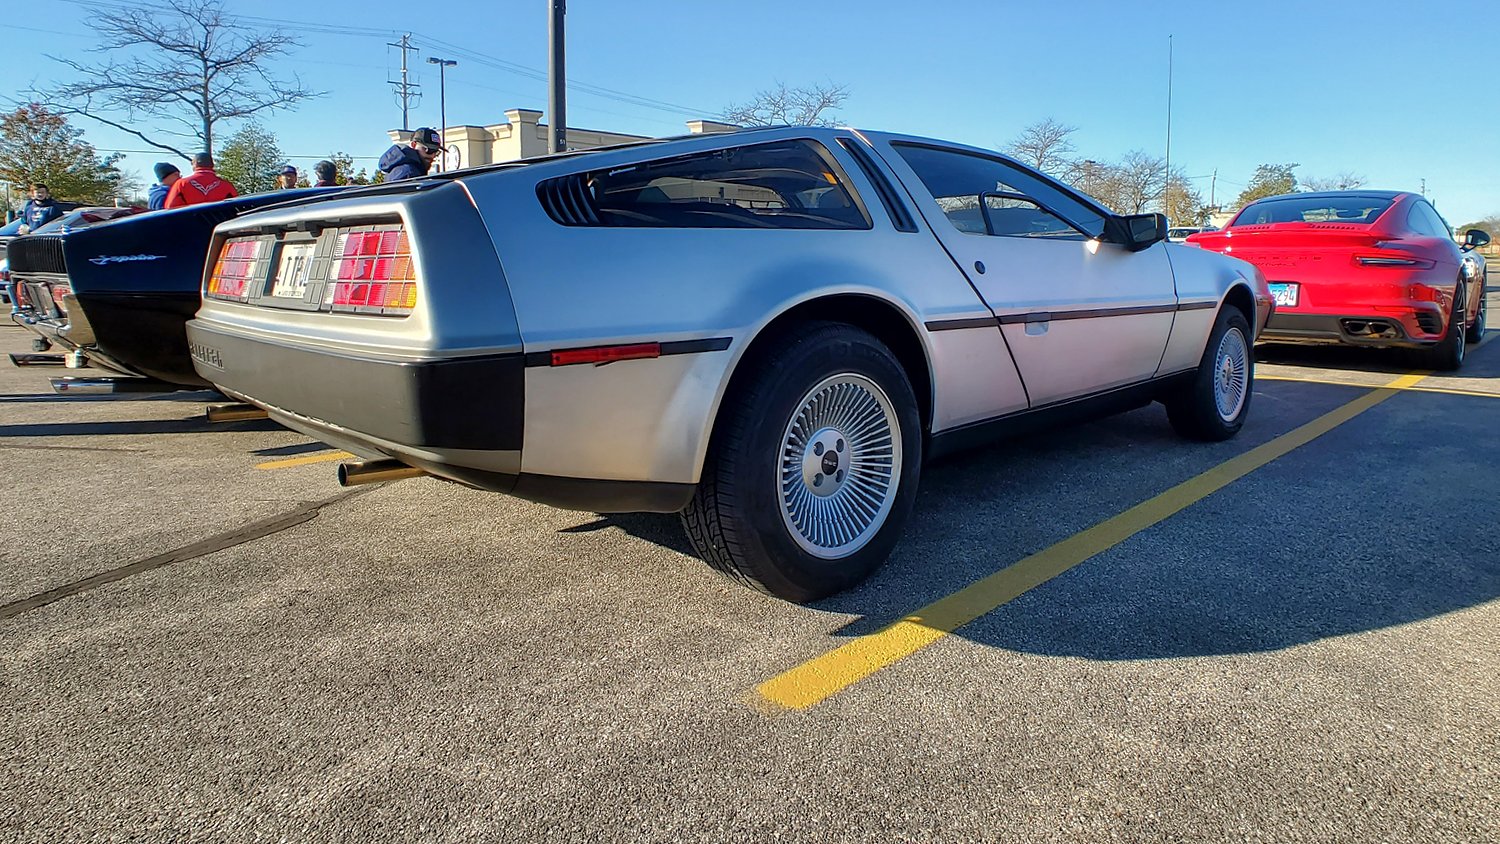 Profile of DeLorean.